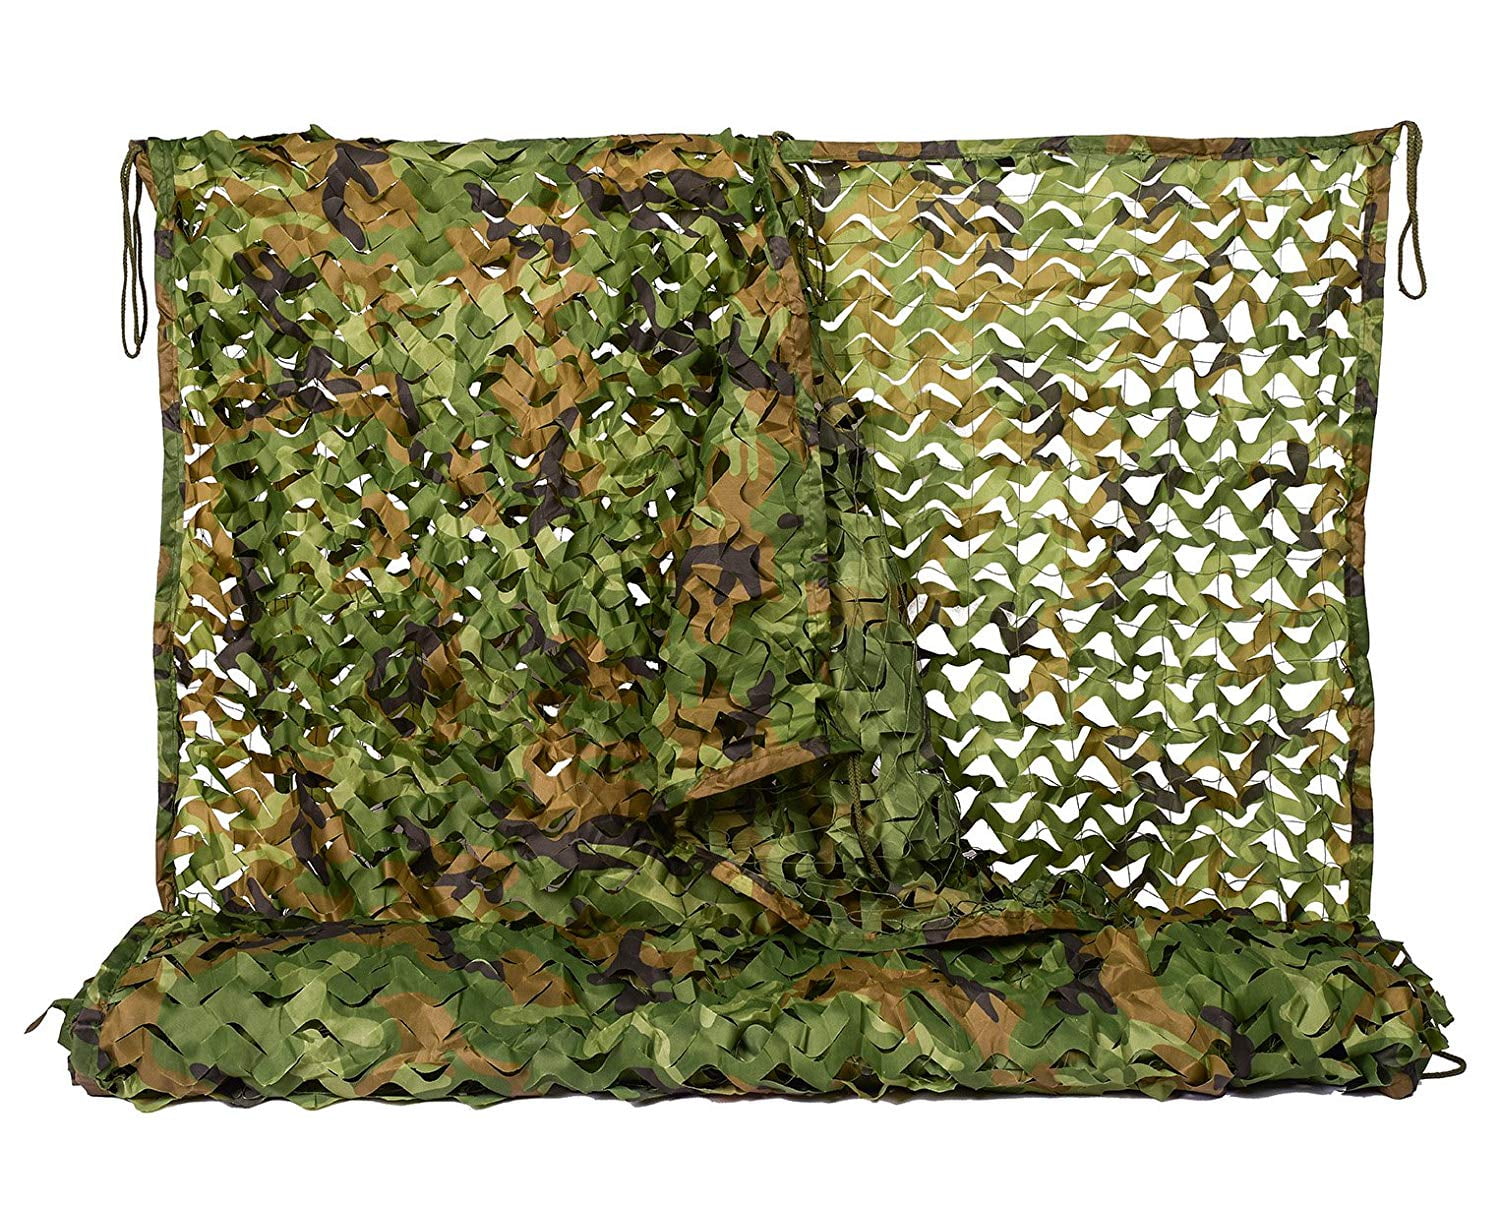 Army Grün Woodland Camouflage Camo Netz Netze Net für Tabletop Camping Jagd und andere Outdoor Aktivitäten 2 x 3 m 